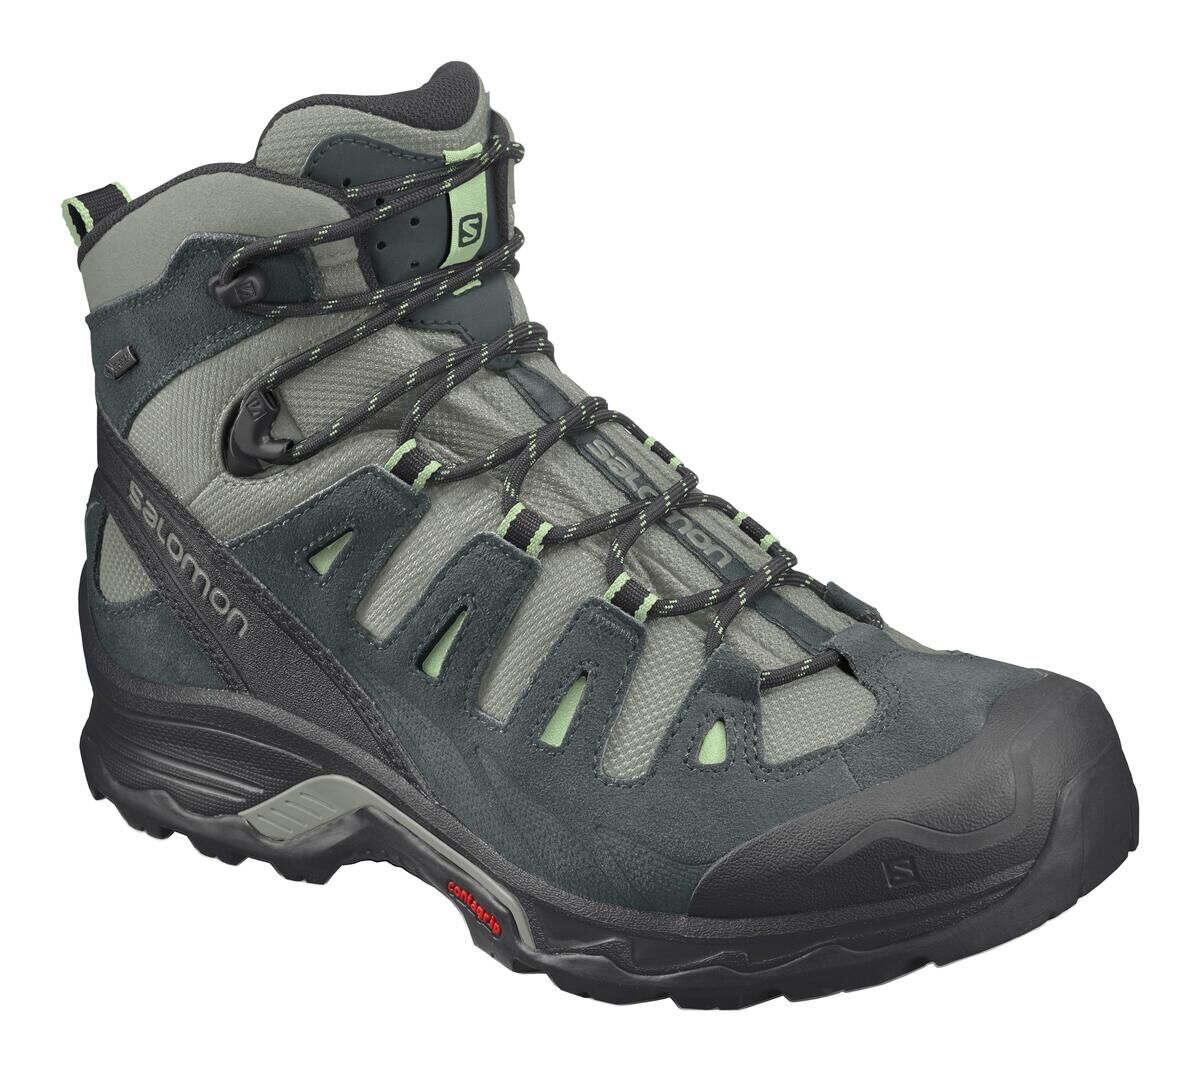 Salomon - Quest Prime GTX® W - Hiking Boots - Women's